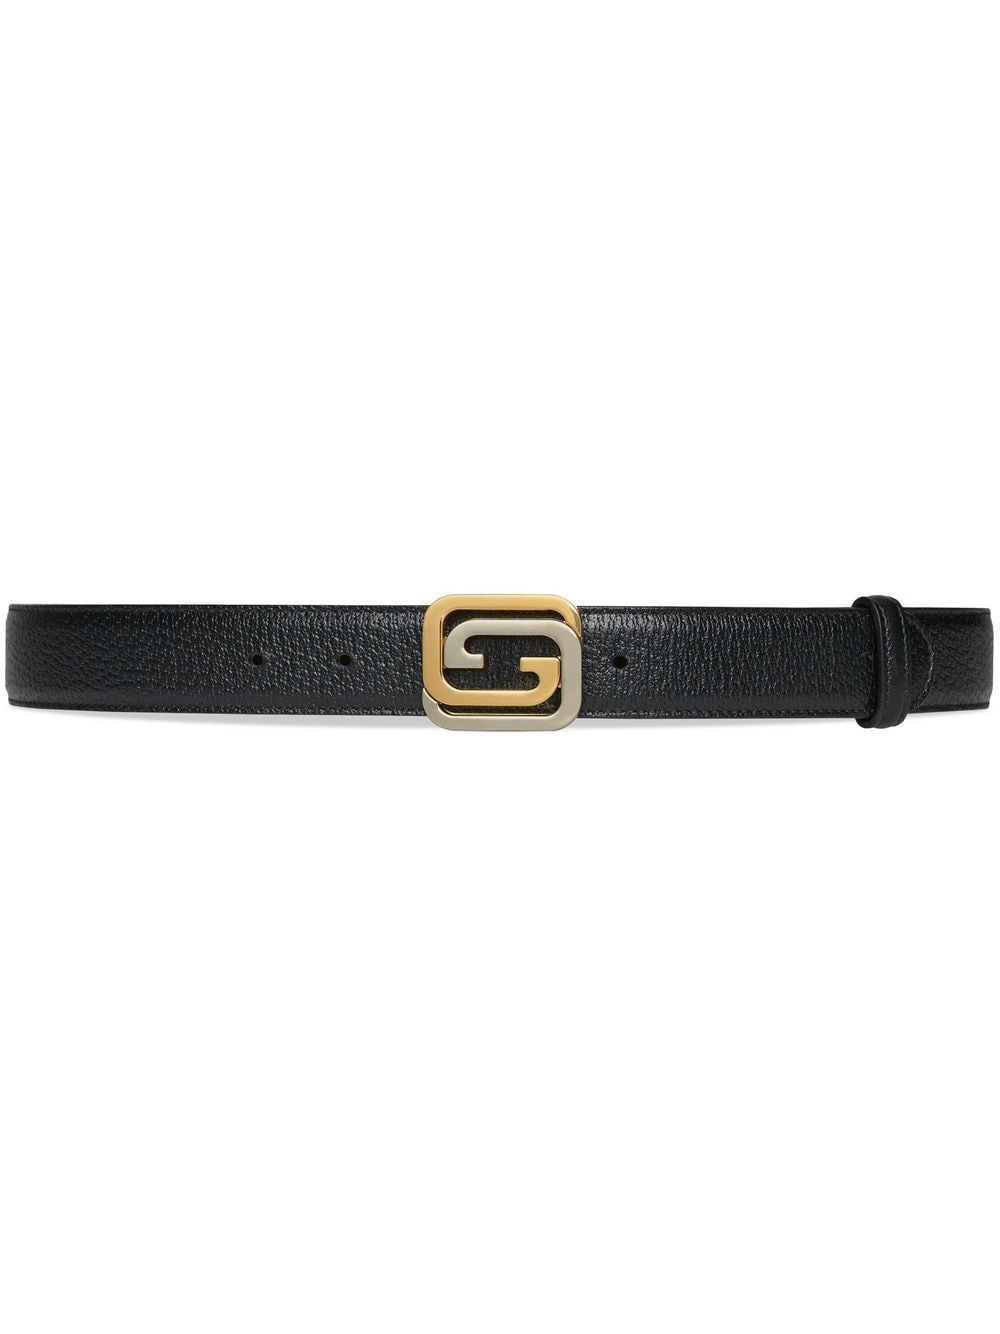 Gucci Interlocking G buckle belt - Black von Gucci